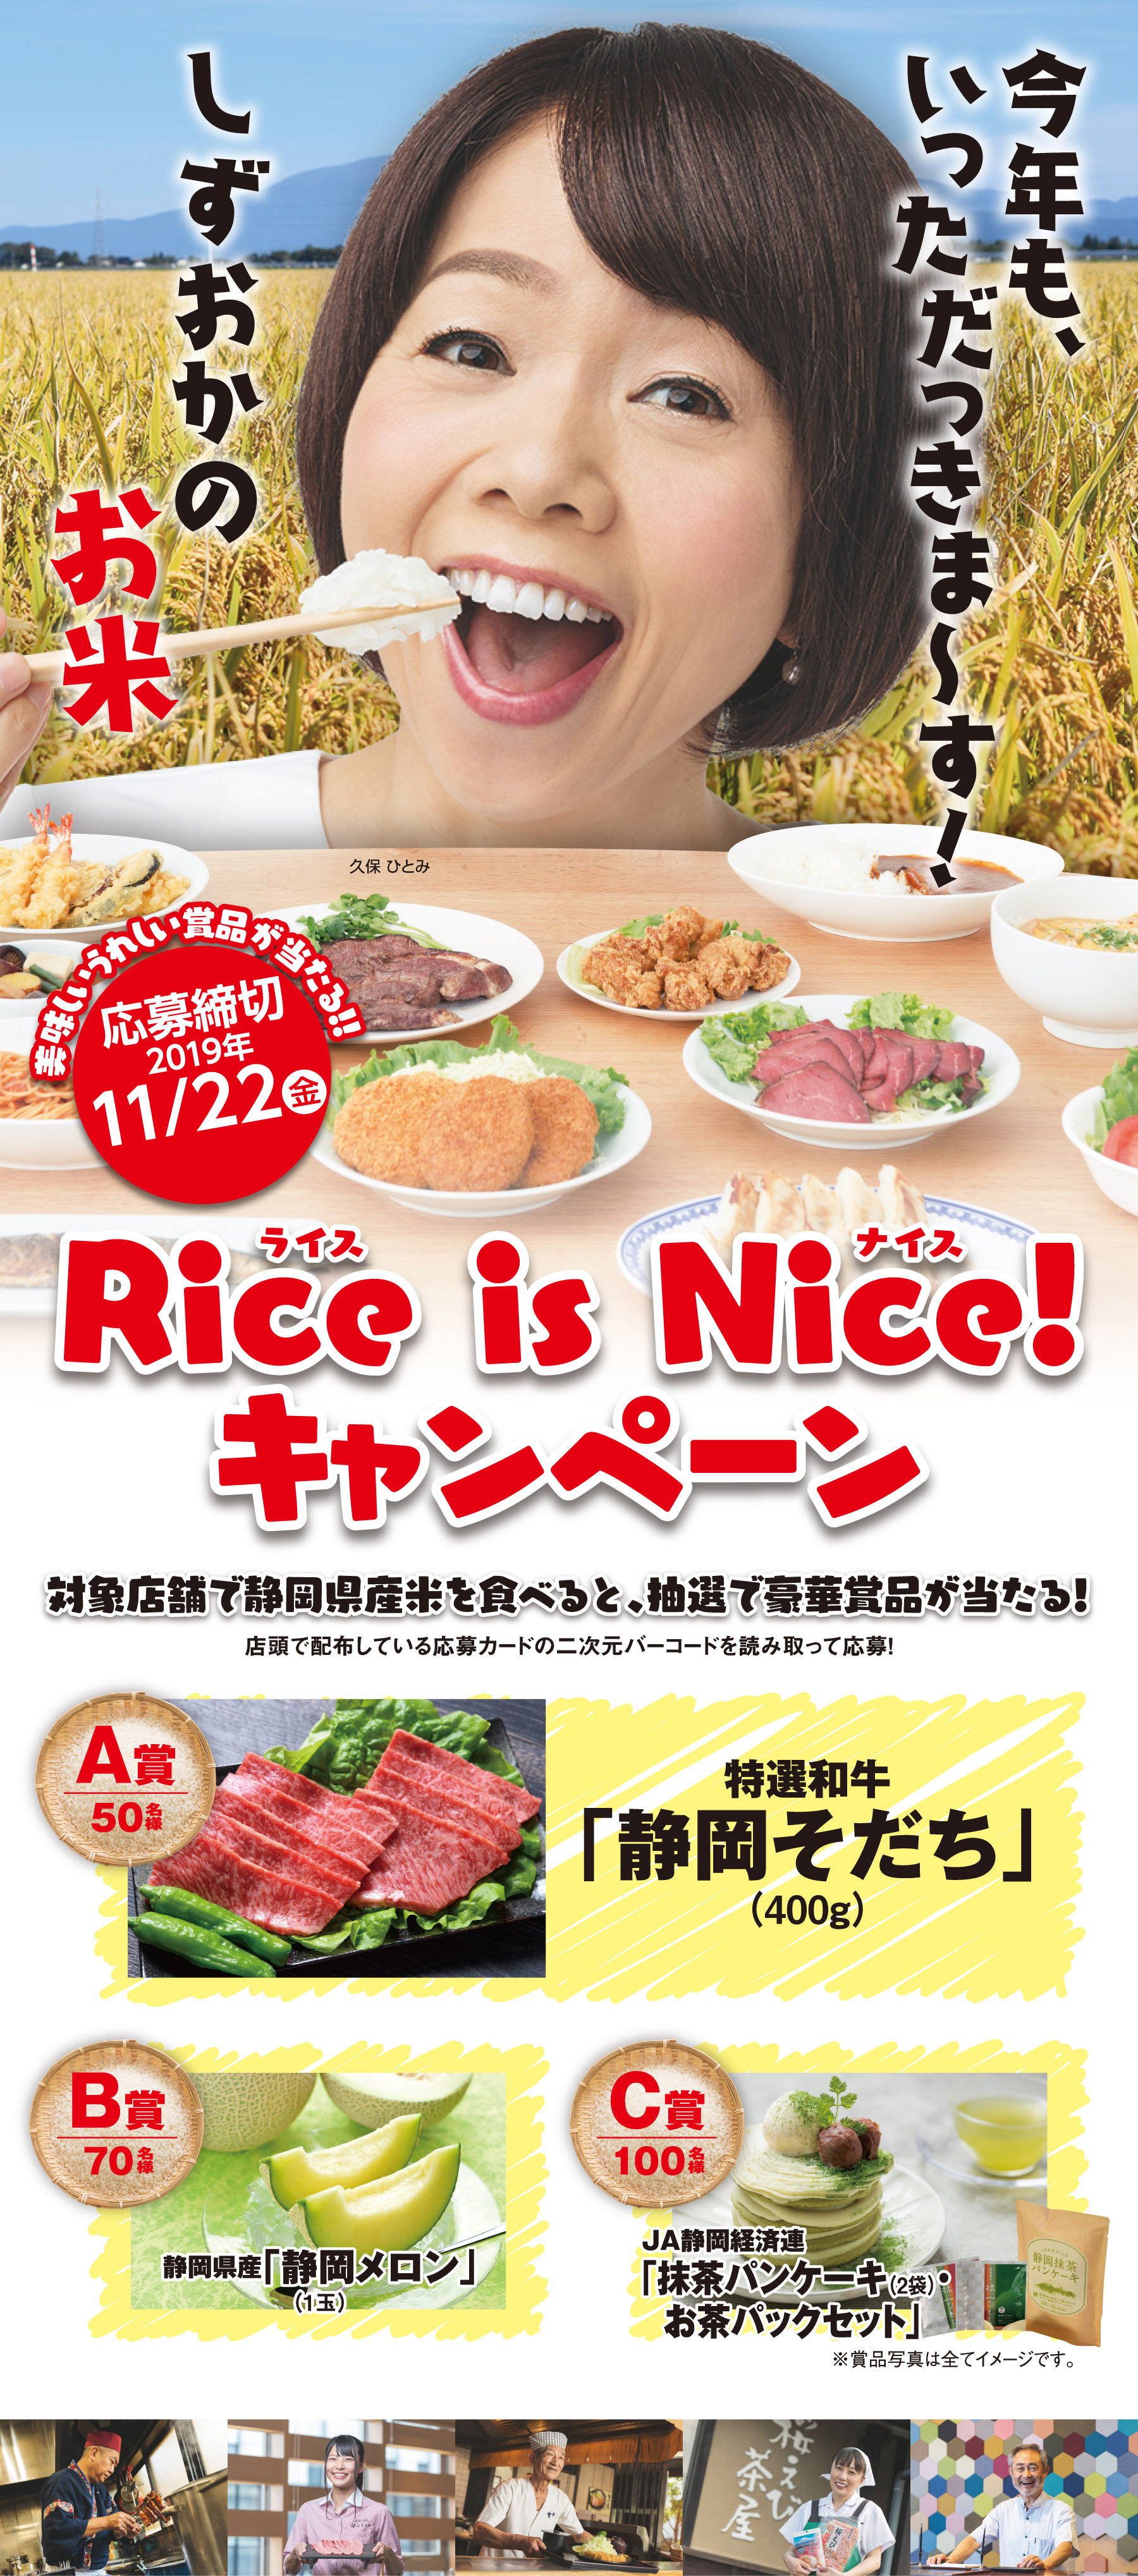 Rice is Nice! キャンペーン